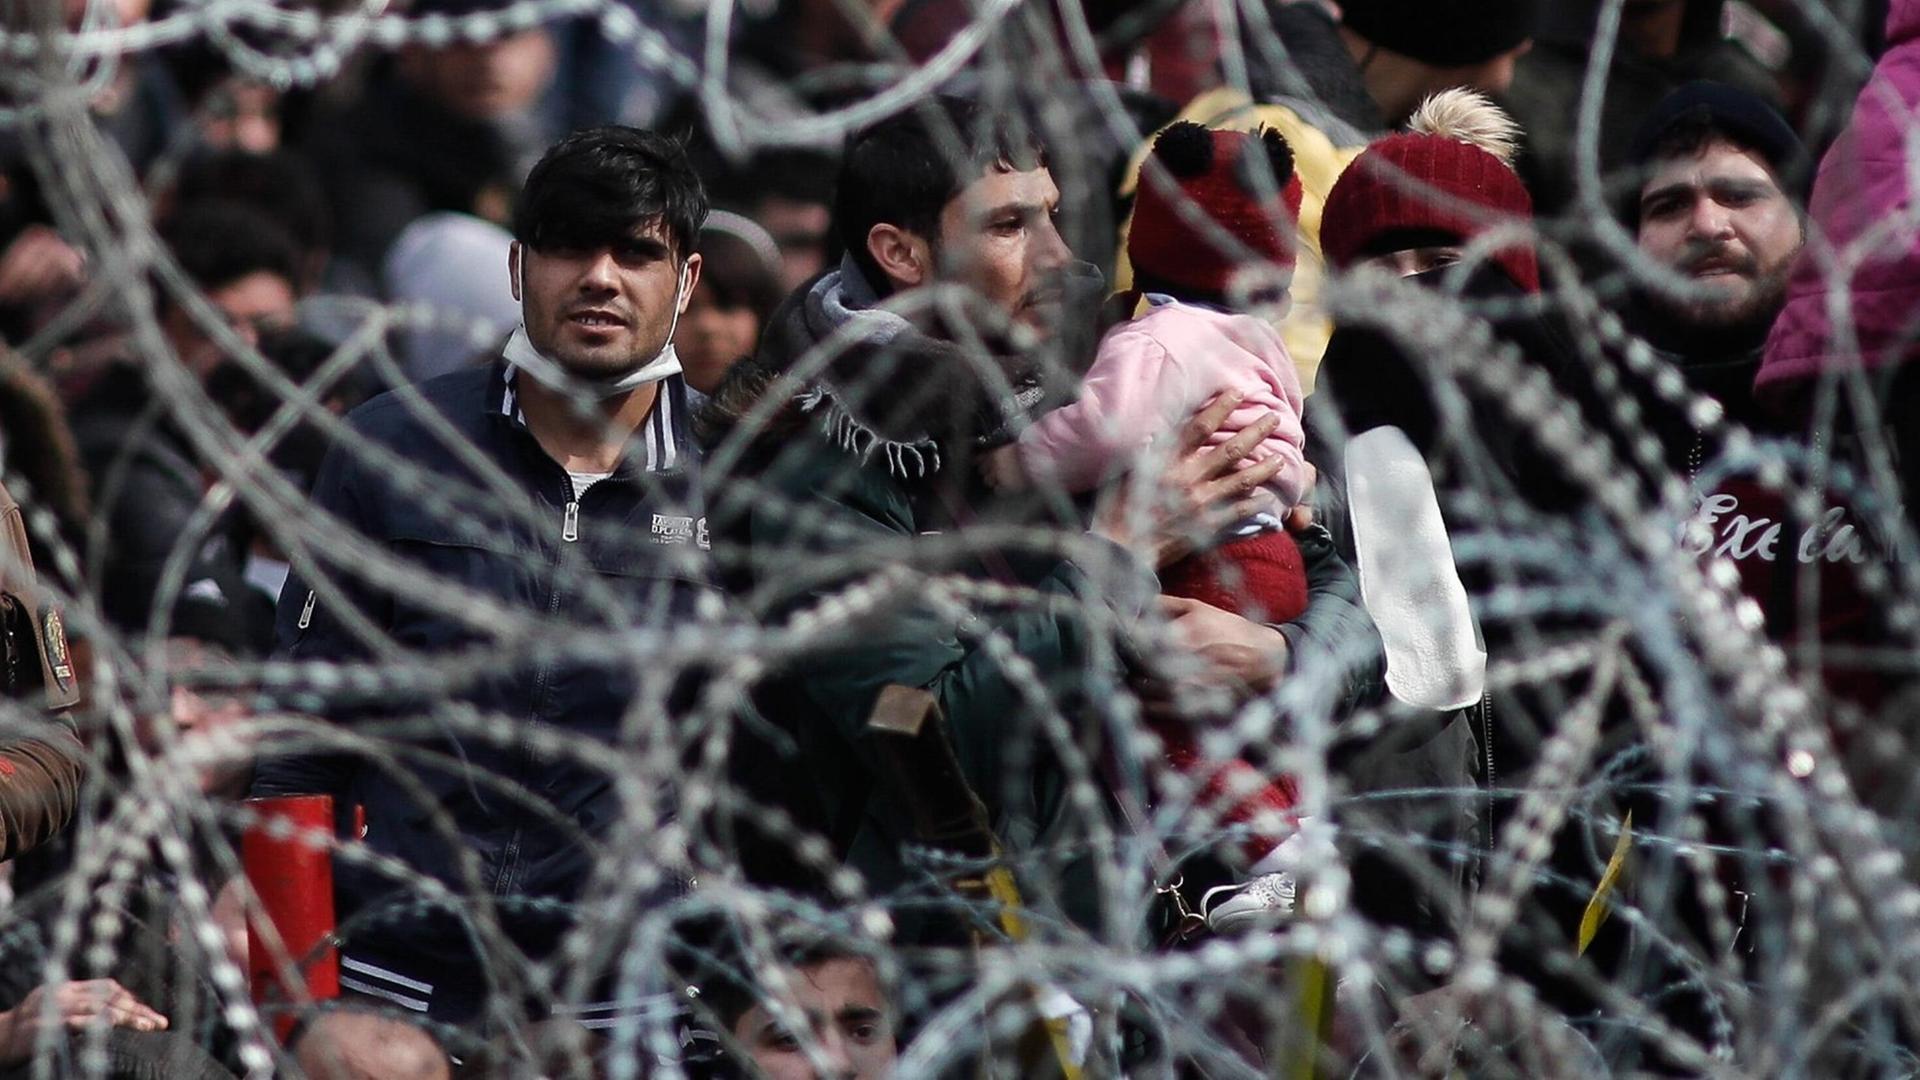 Migranten stehen am 2. März 2020 an der Grenze zwischen Griechenland und der Türkei an einem Stacheldrahtzaun.